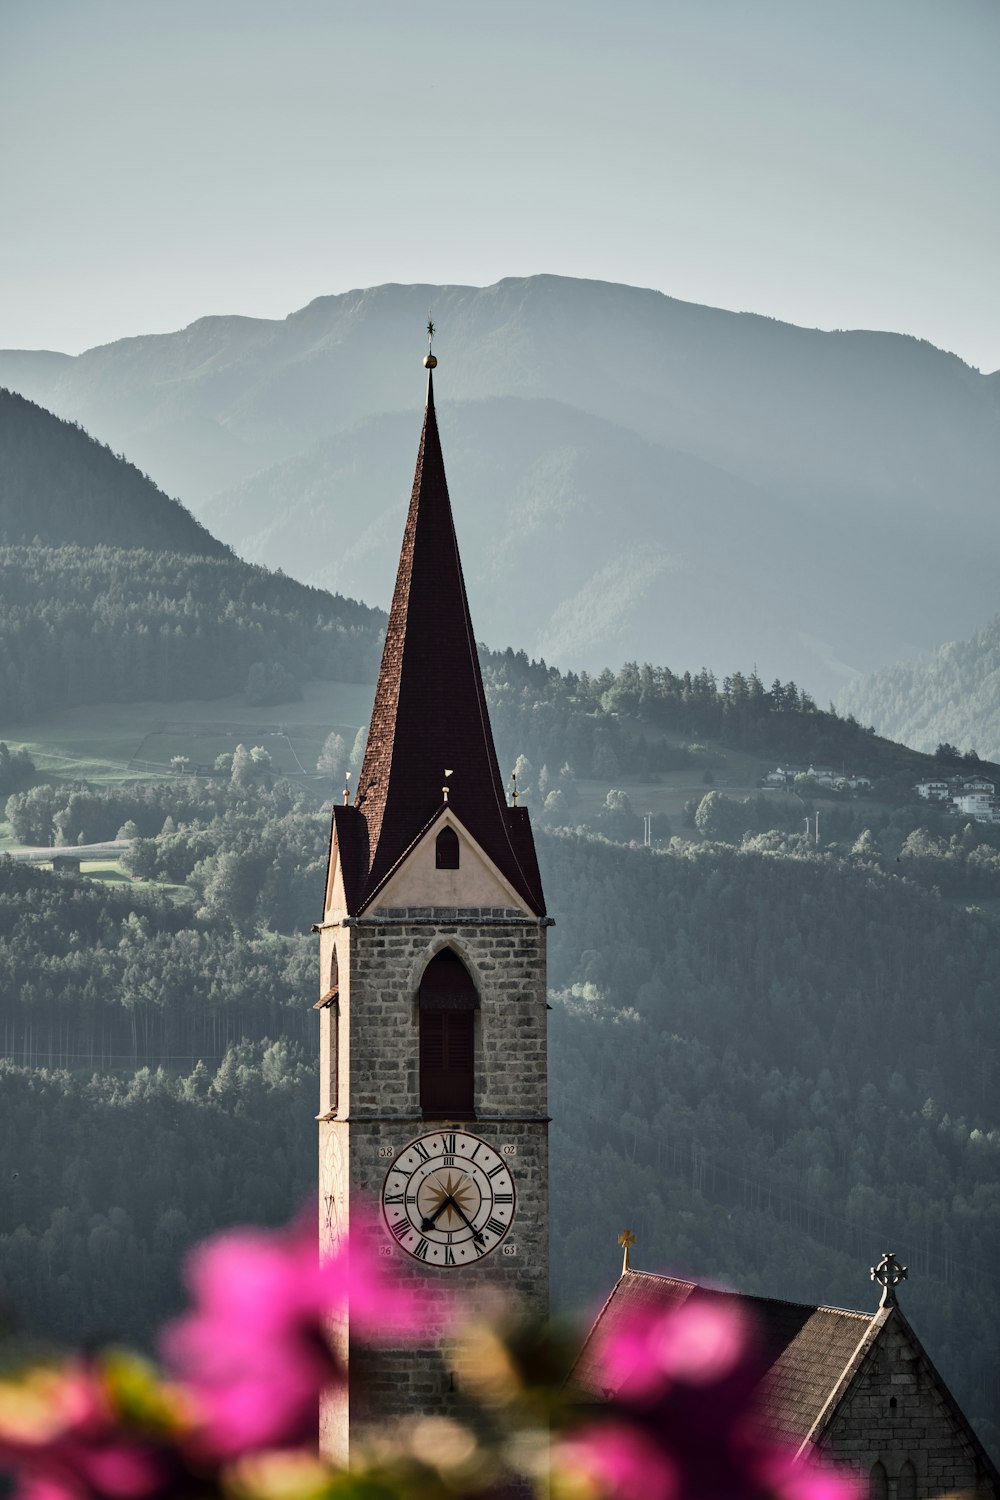 ein Kirchturm mit einer Uhr darauf